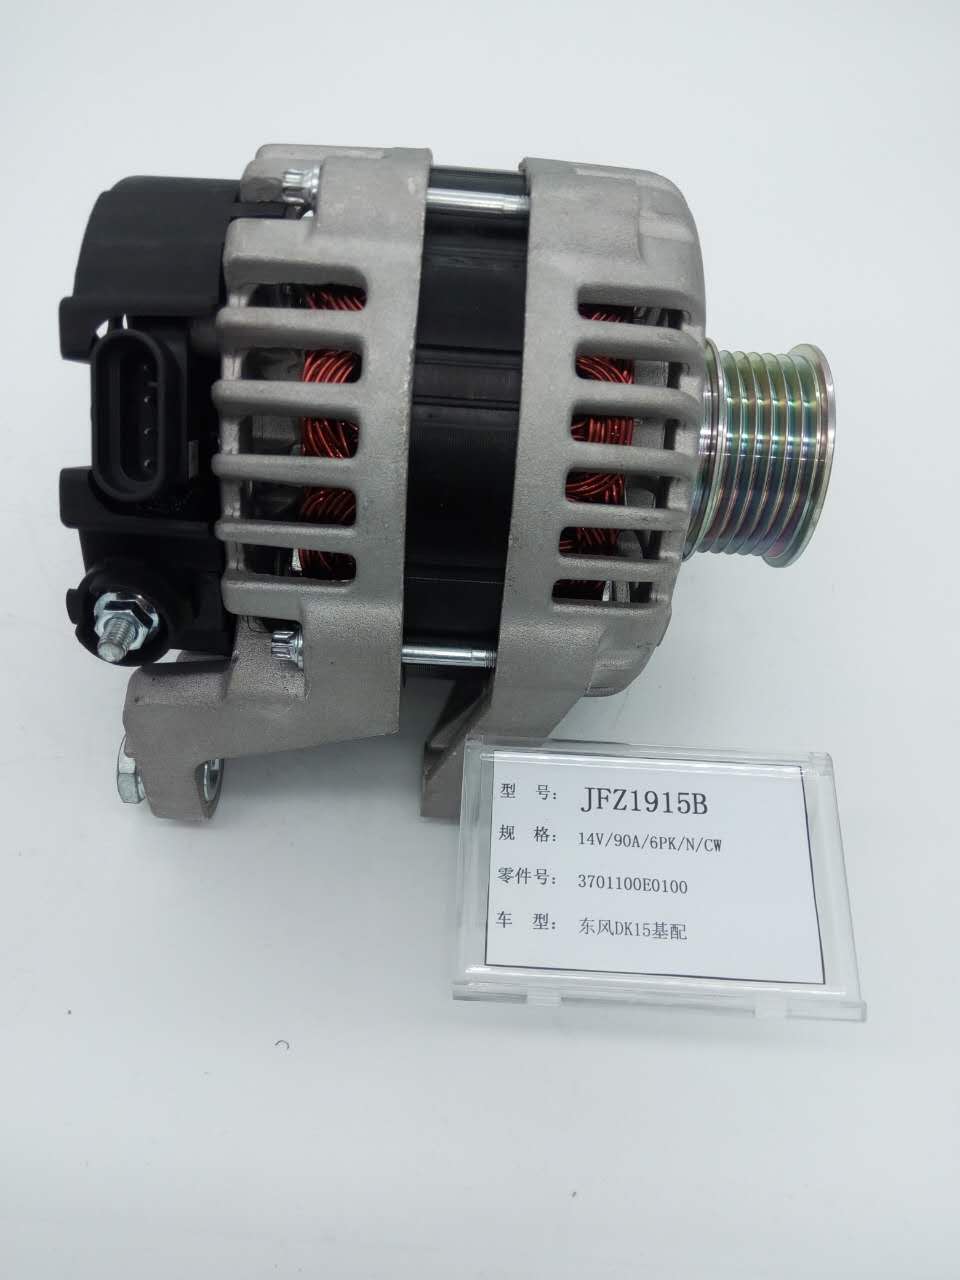 雷米发电机3701100E0100适用于东风DK15基配